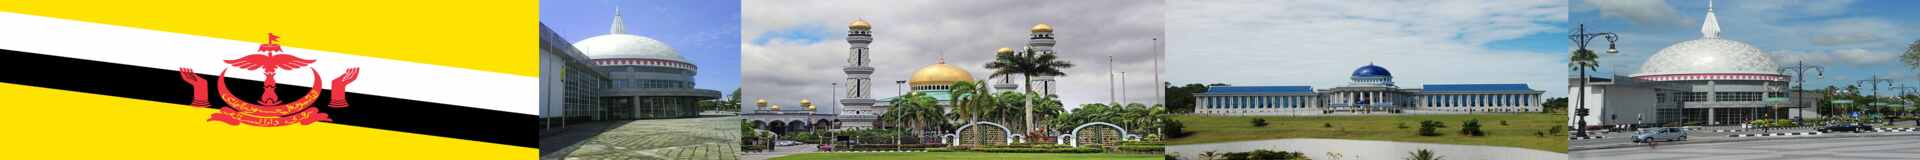 Global Brunei Marketing Tenders